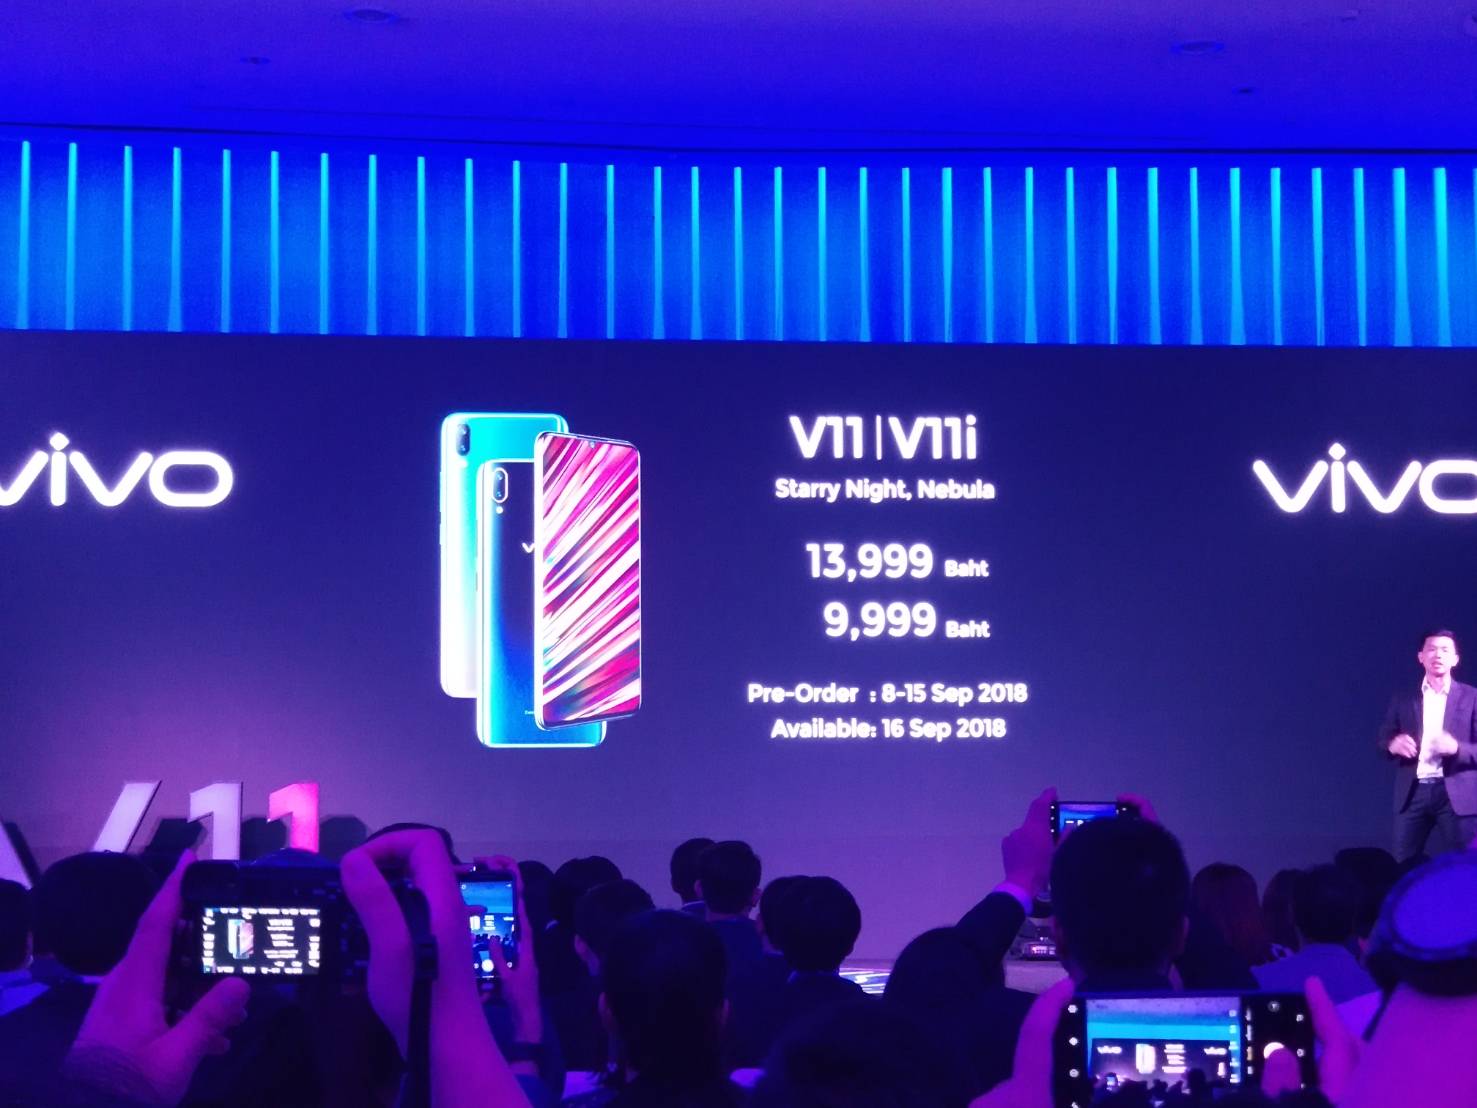 เปิดตัว Vivo V11 และ Vivo V11i ต่อยอดความสำเร็จ V ซีรี่ส์ ในราคาเริ่มต้น 9,999 บาท !!